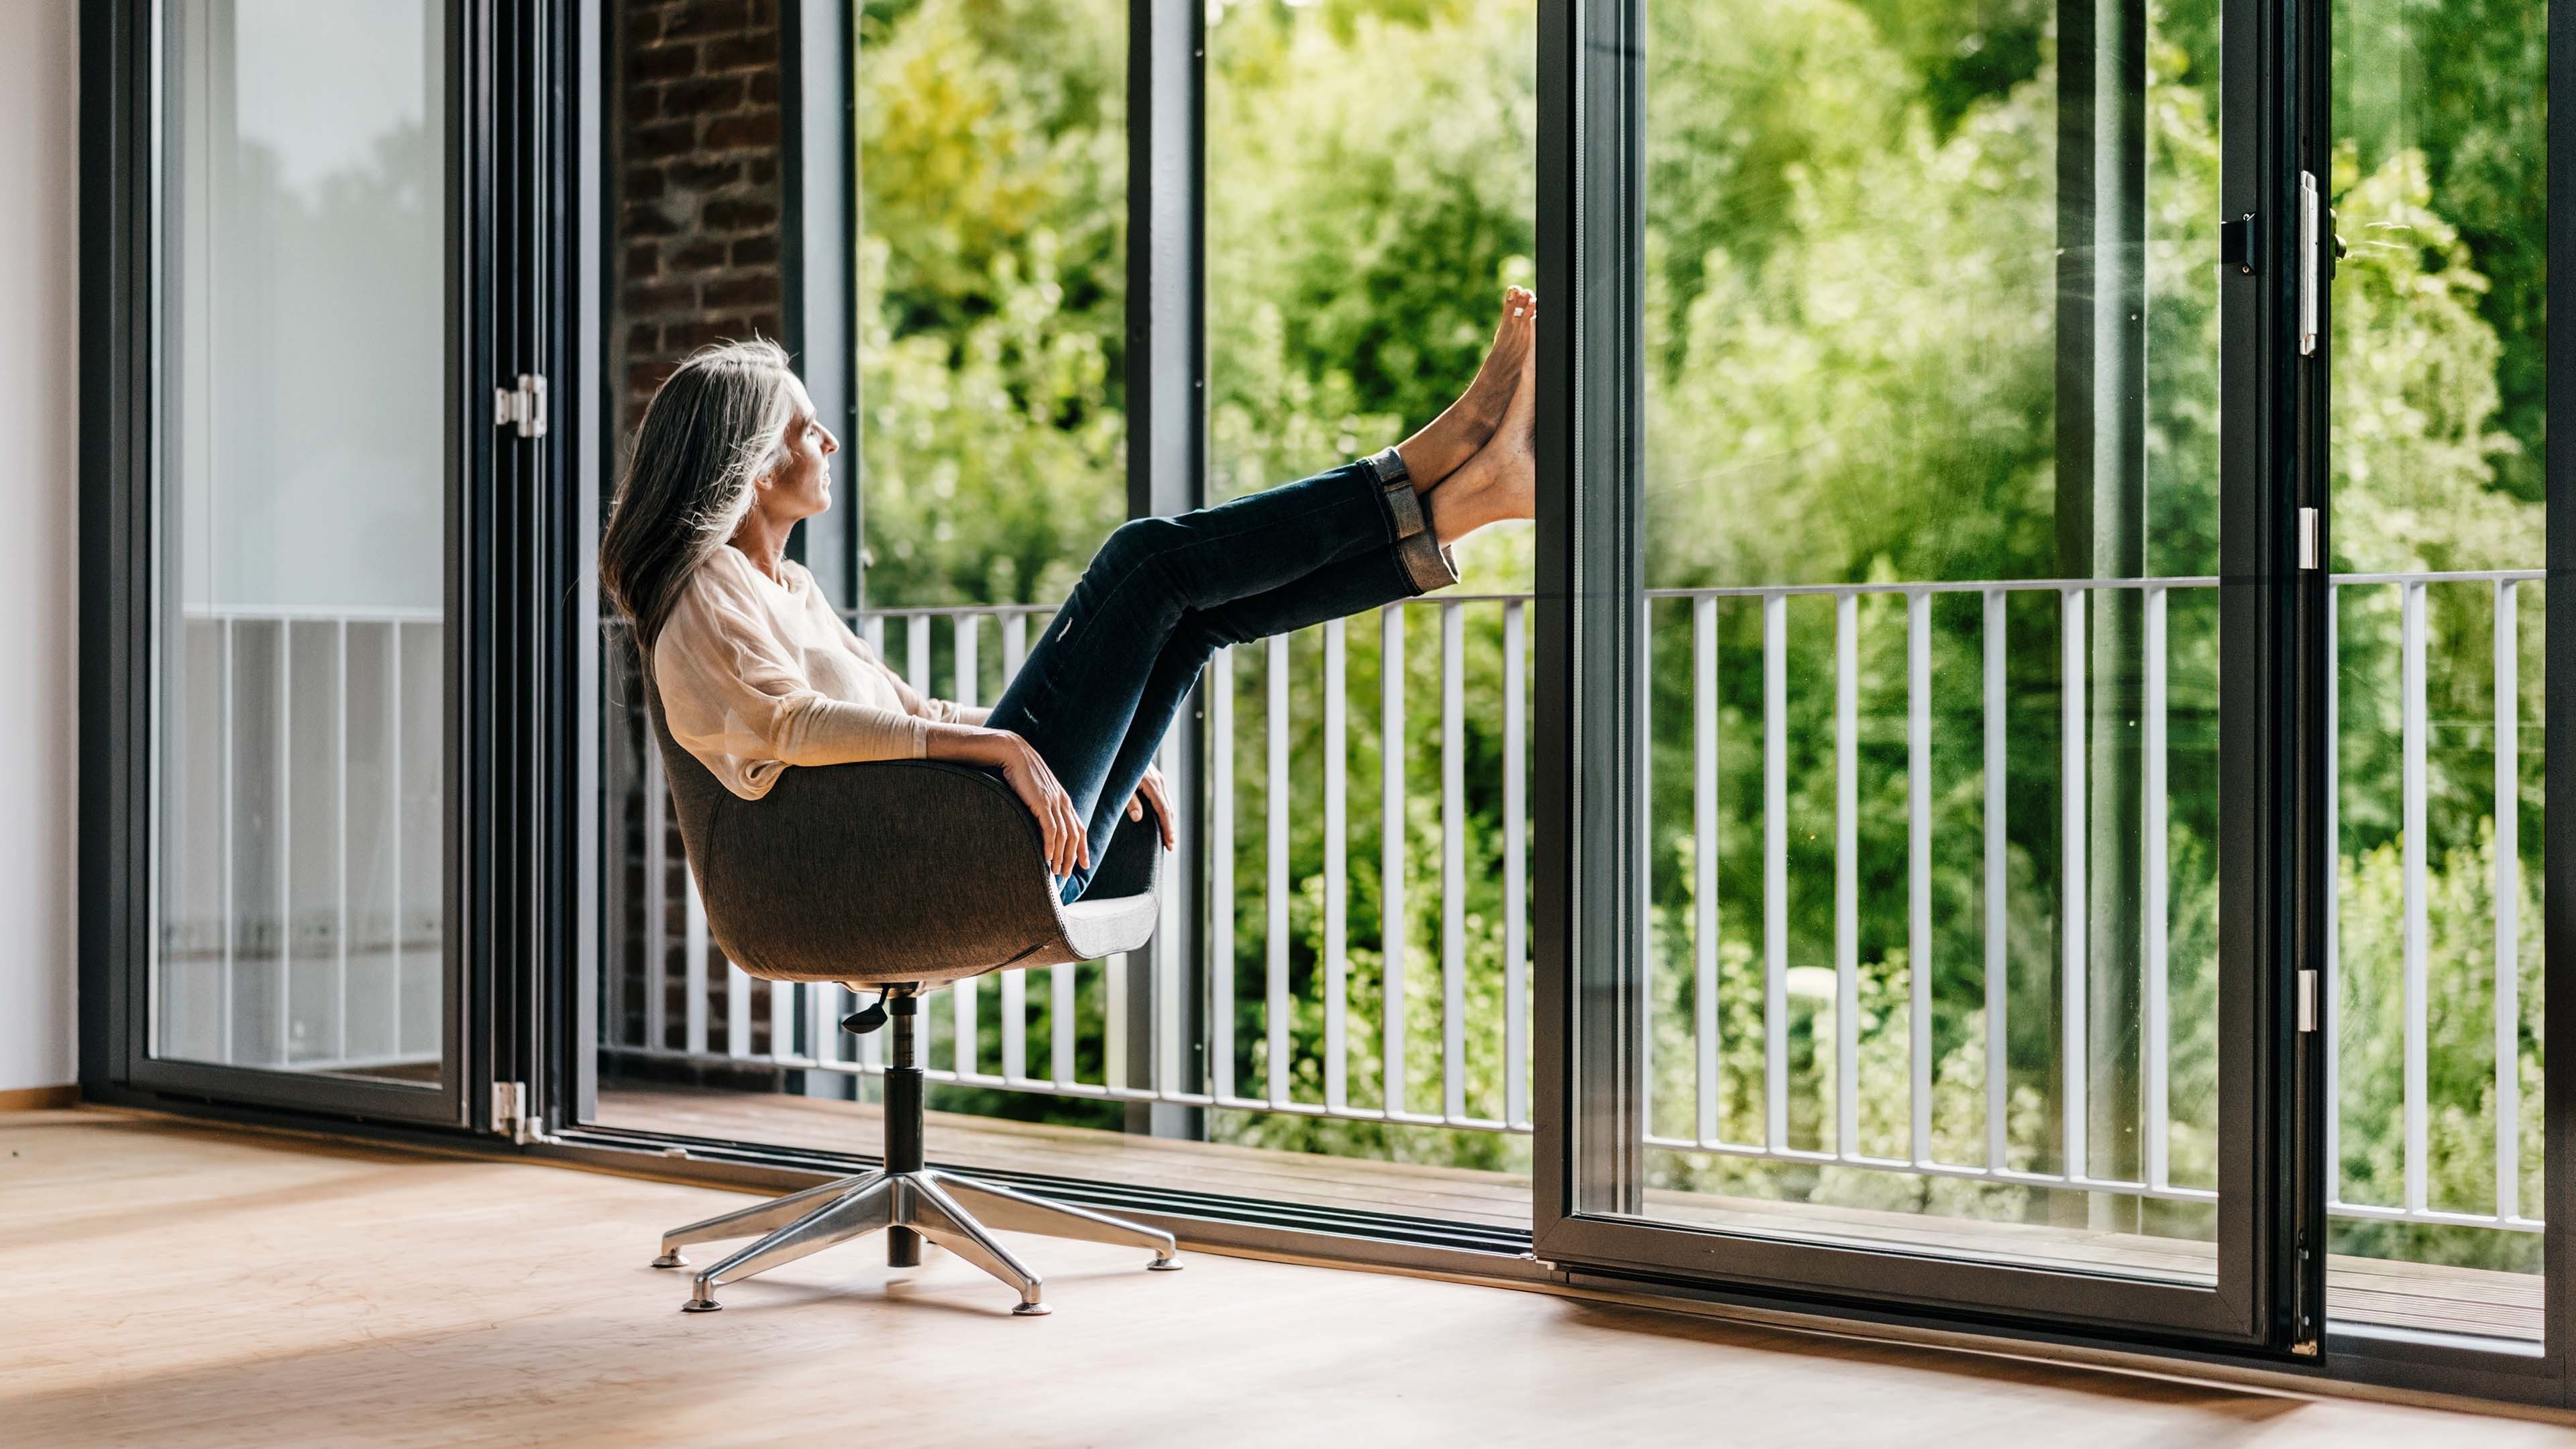 Frau sitzt gemütlich im Sessel und blickt aus einer grossen Fensterfront in die Natur.